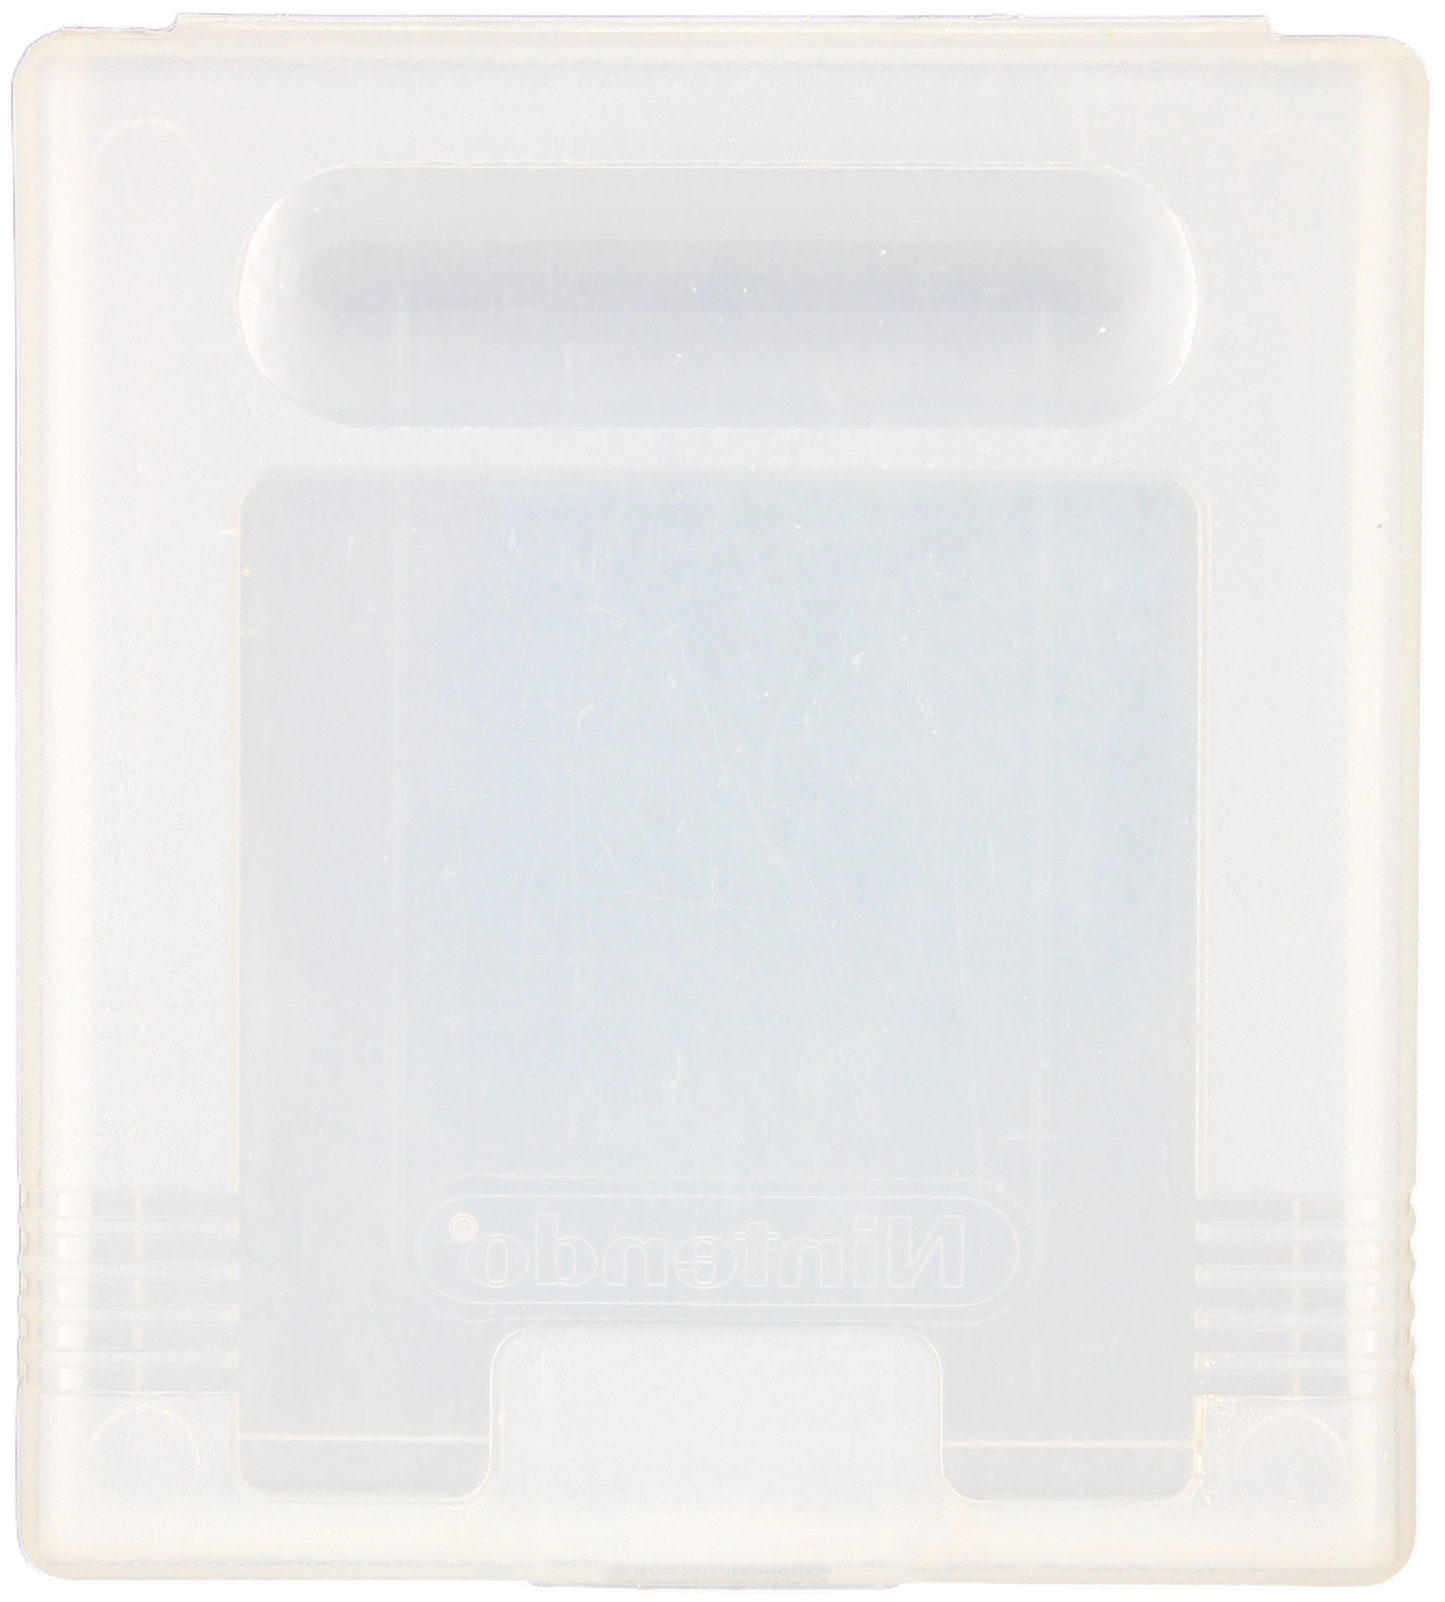 Game Boy Cartridge Case